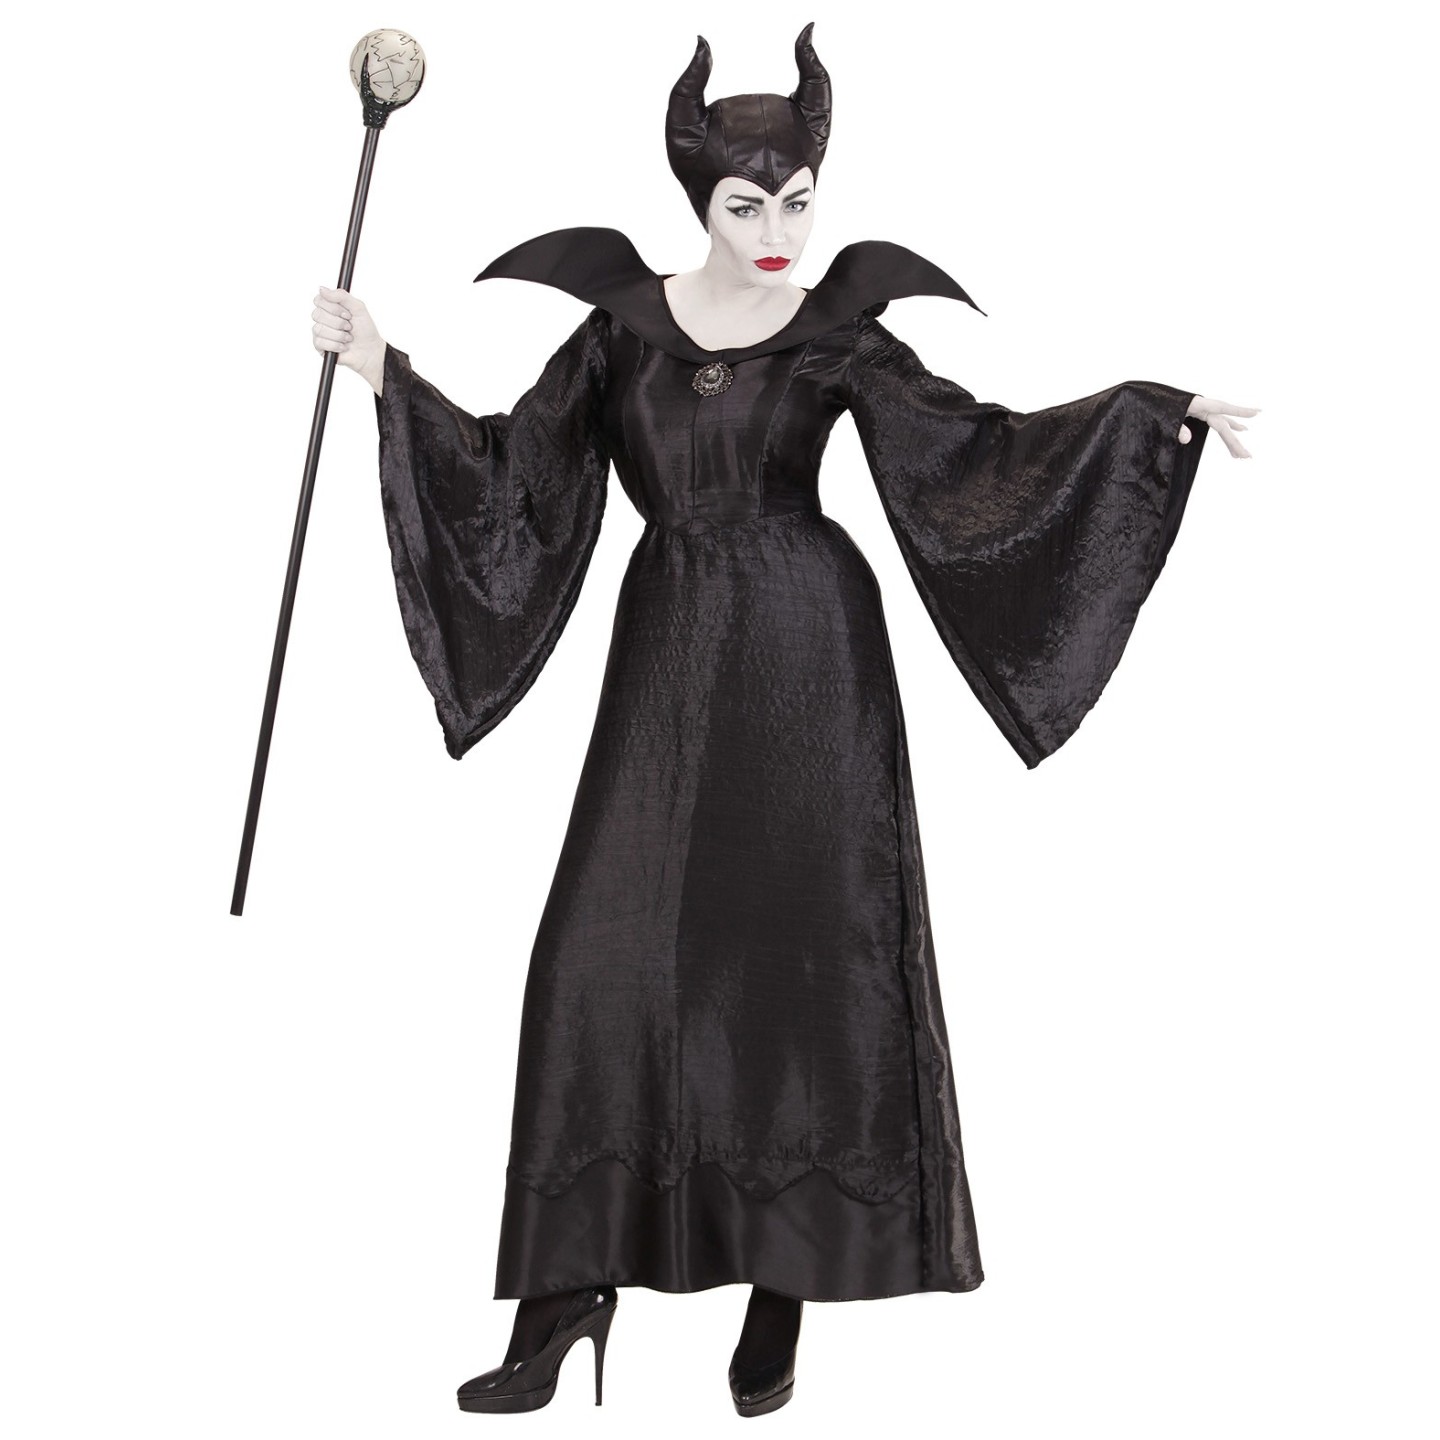 combinatie Het Verdienen Maleficent kostuum kopen ? | Jokershop.be - Disney verkleedkleding